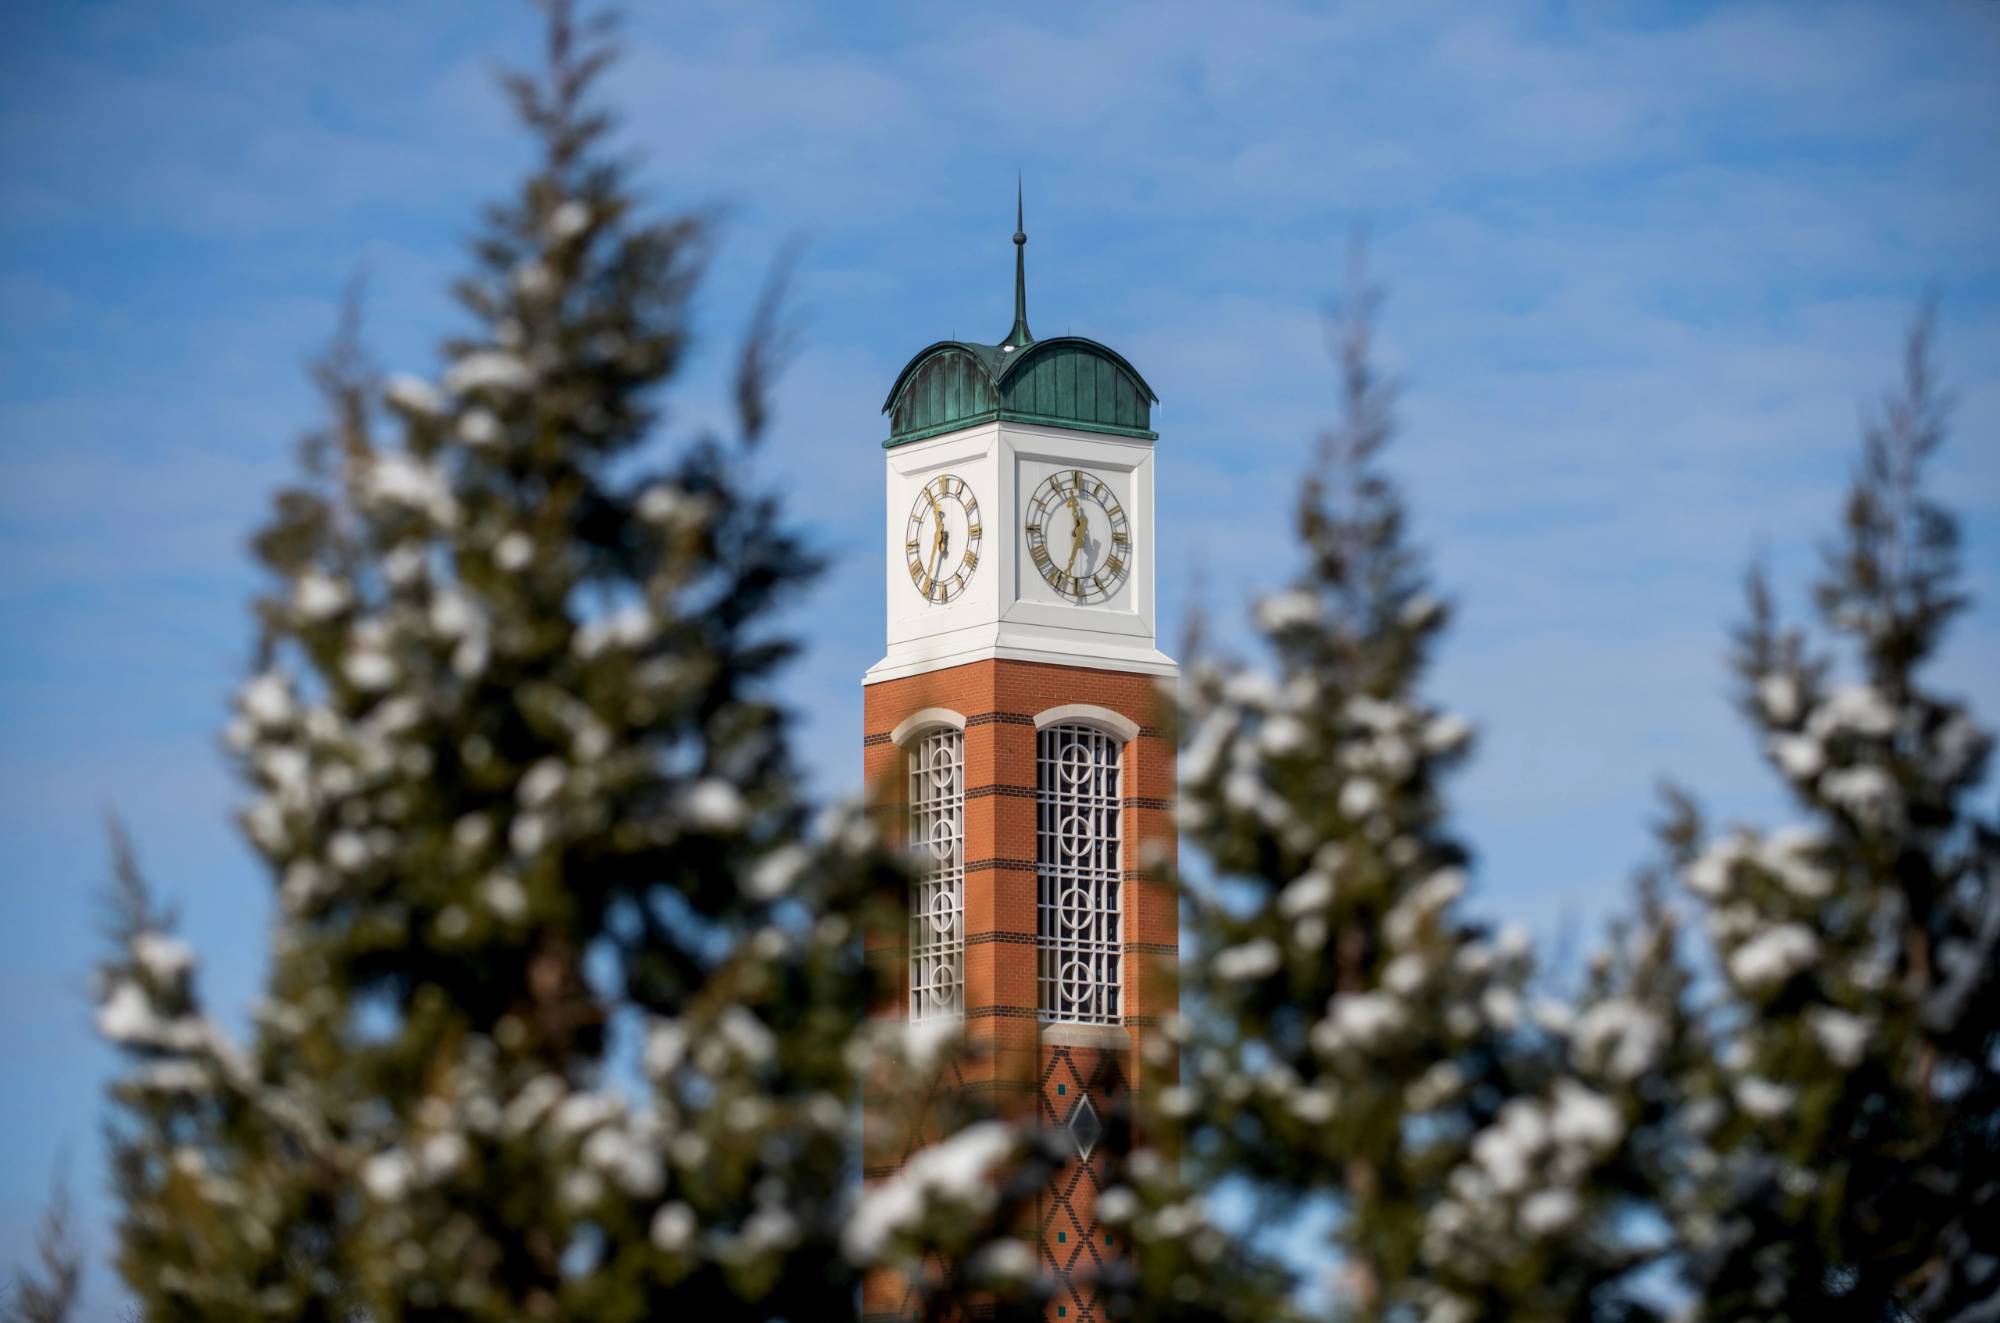 Clocktower on GVSU's Allendale Campus during the winter season